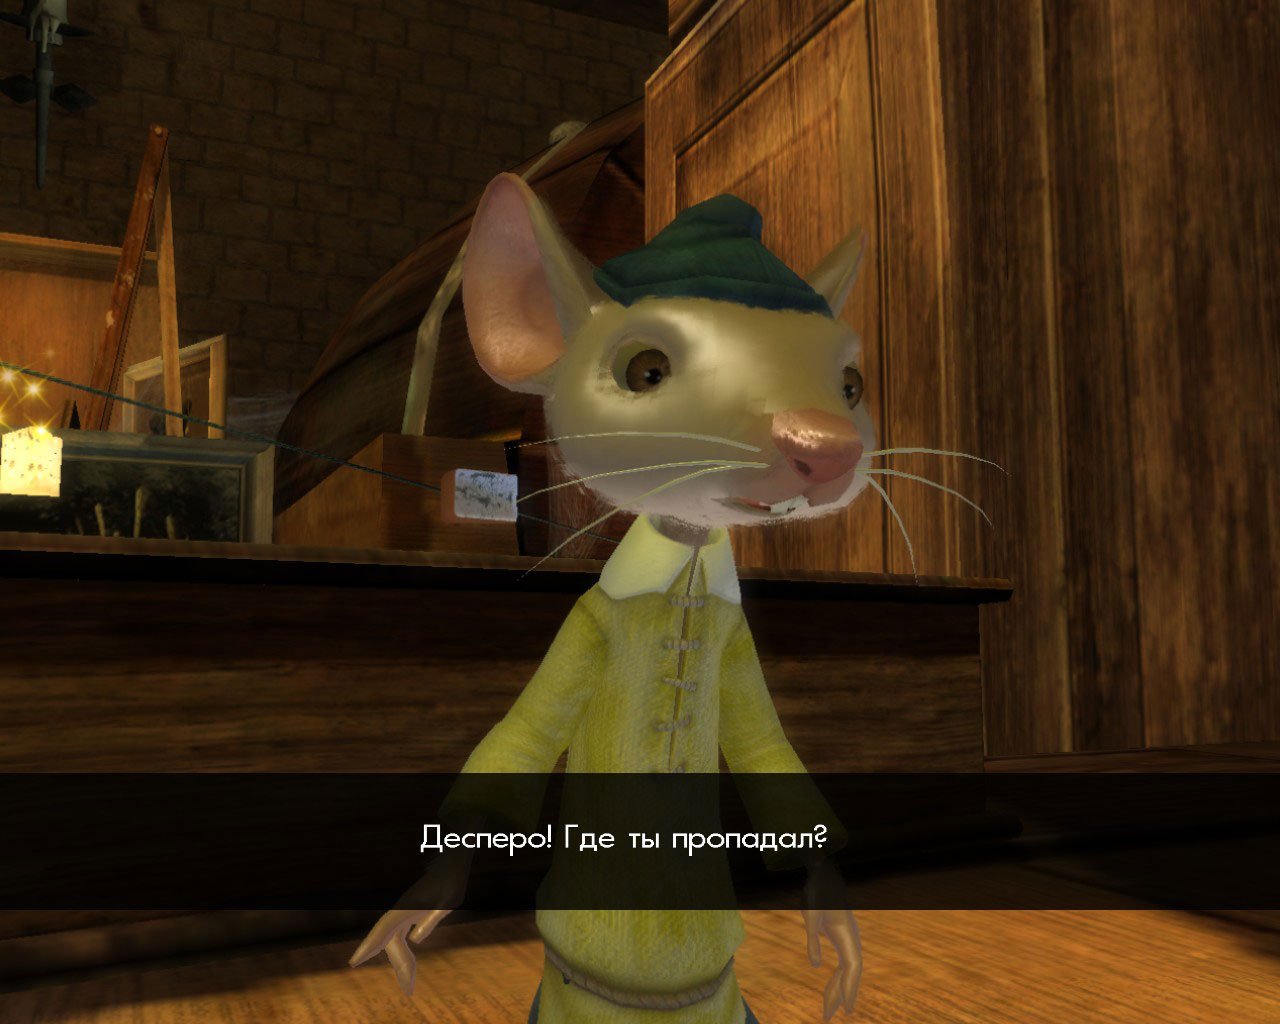 screenshots tale of despereaux, the